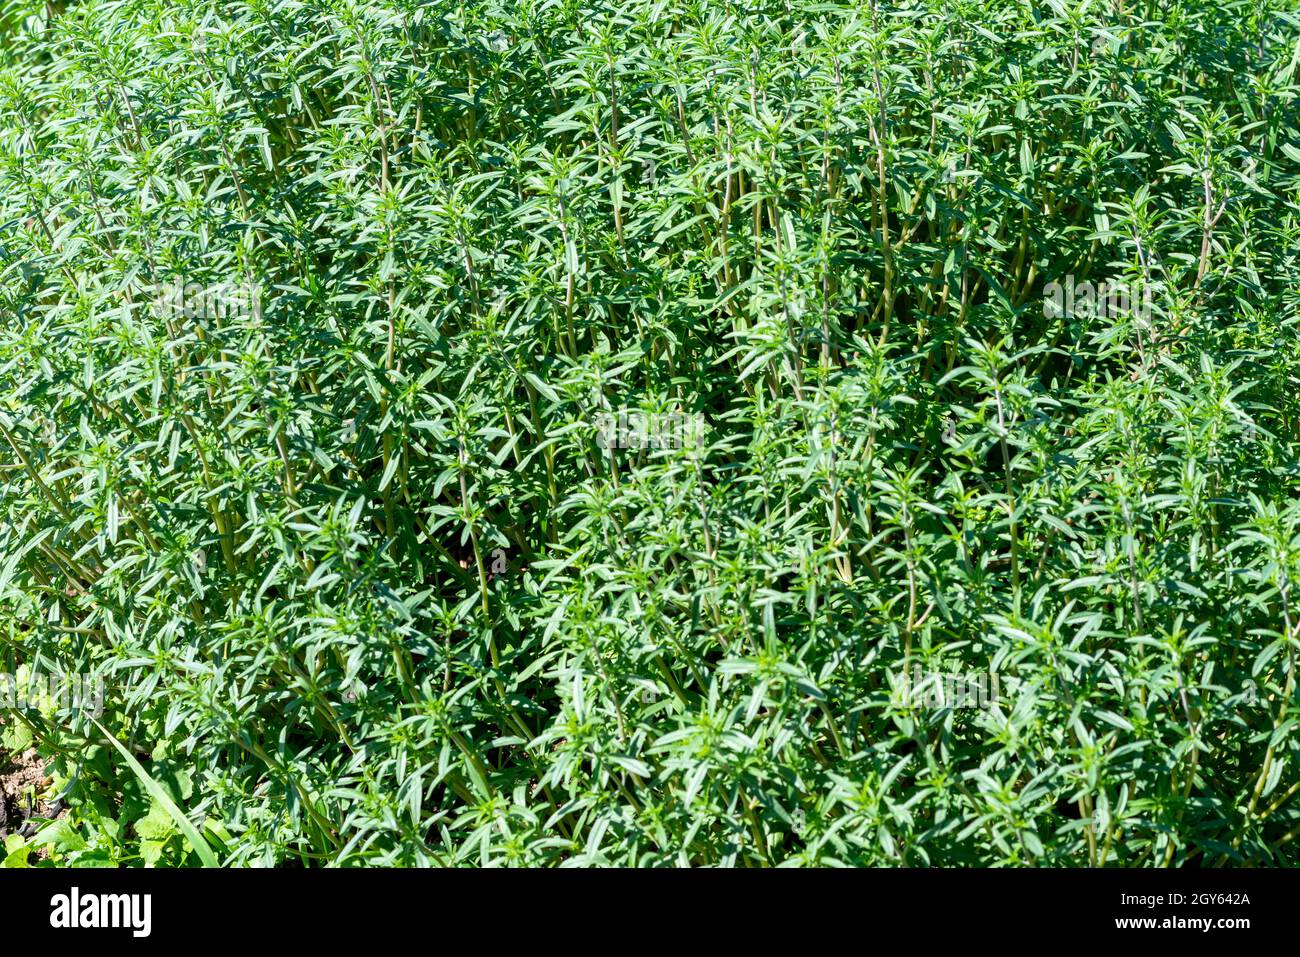 Une plante d'herbes aromatiques bio d'été avec une saveur amère et un arôme croissant dans un jardin sur une ferme.La branche fraîche de la grande plante d'herbe a brillant Banque D'Images